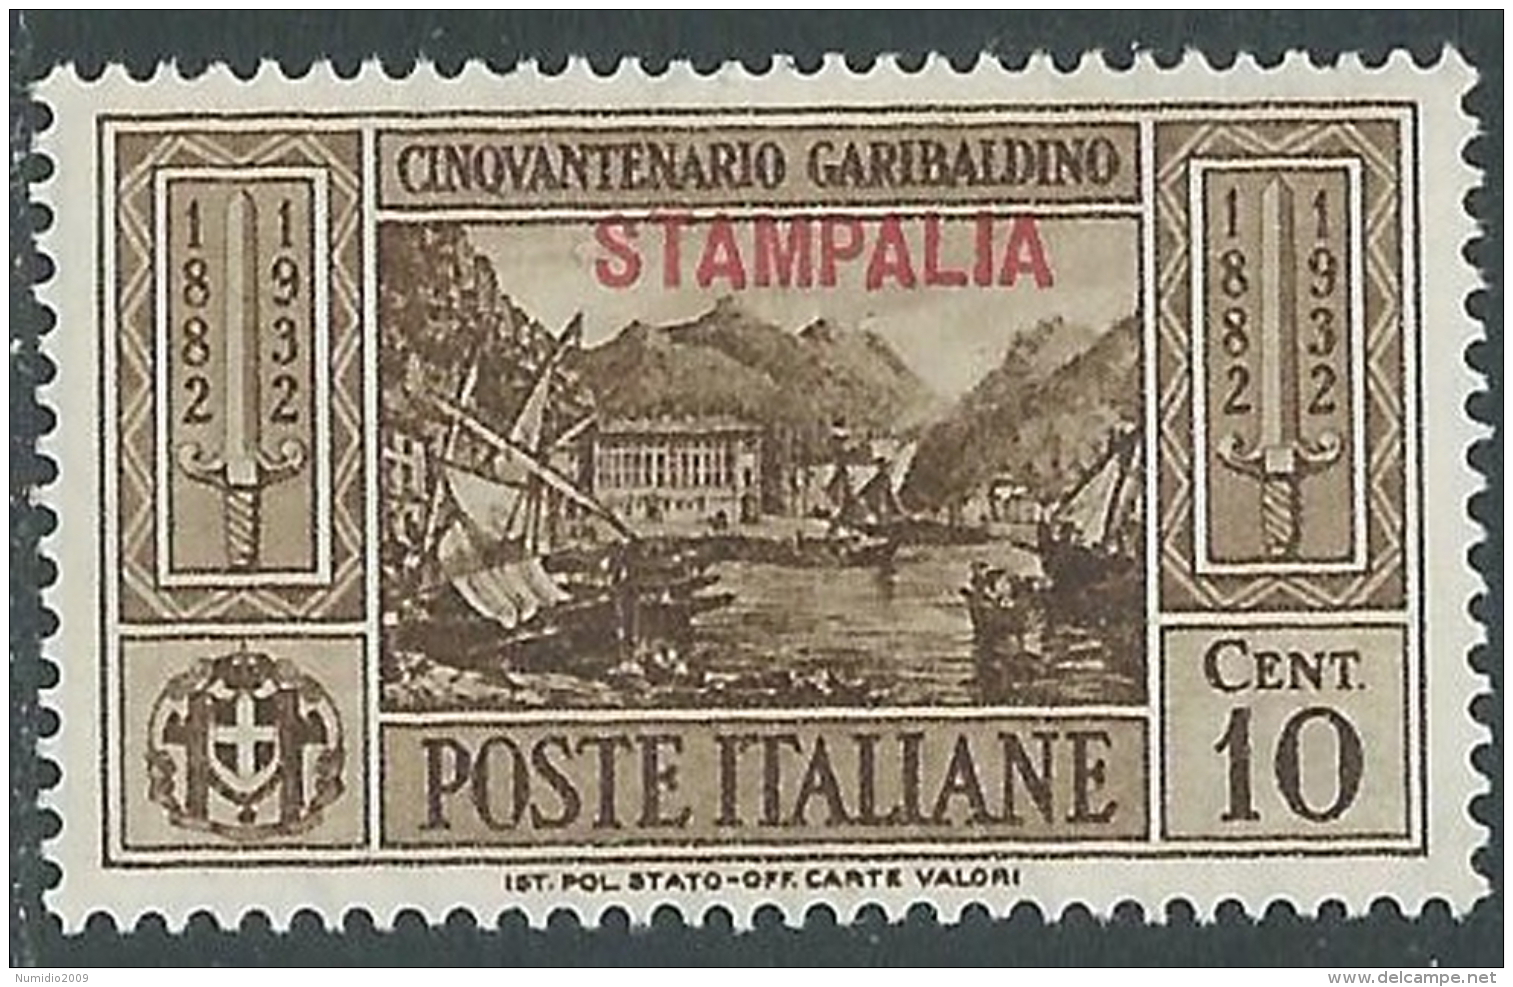 1932 EGEO STAMPALIA GARIBALDI 10 CENT MH * - I39-9 - Egée (Stampalia)